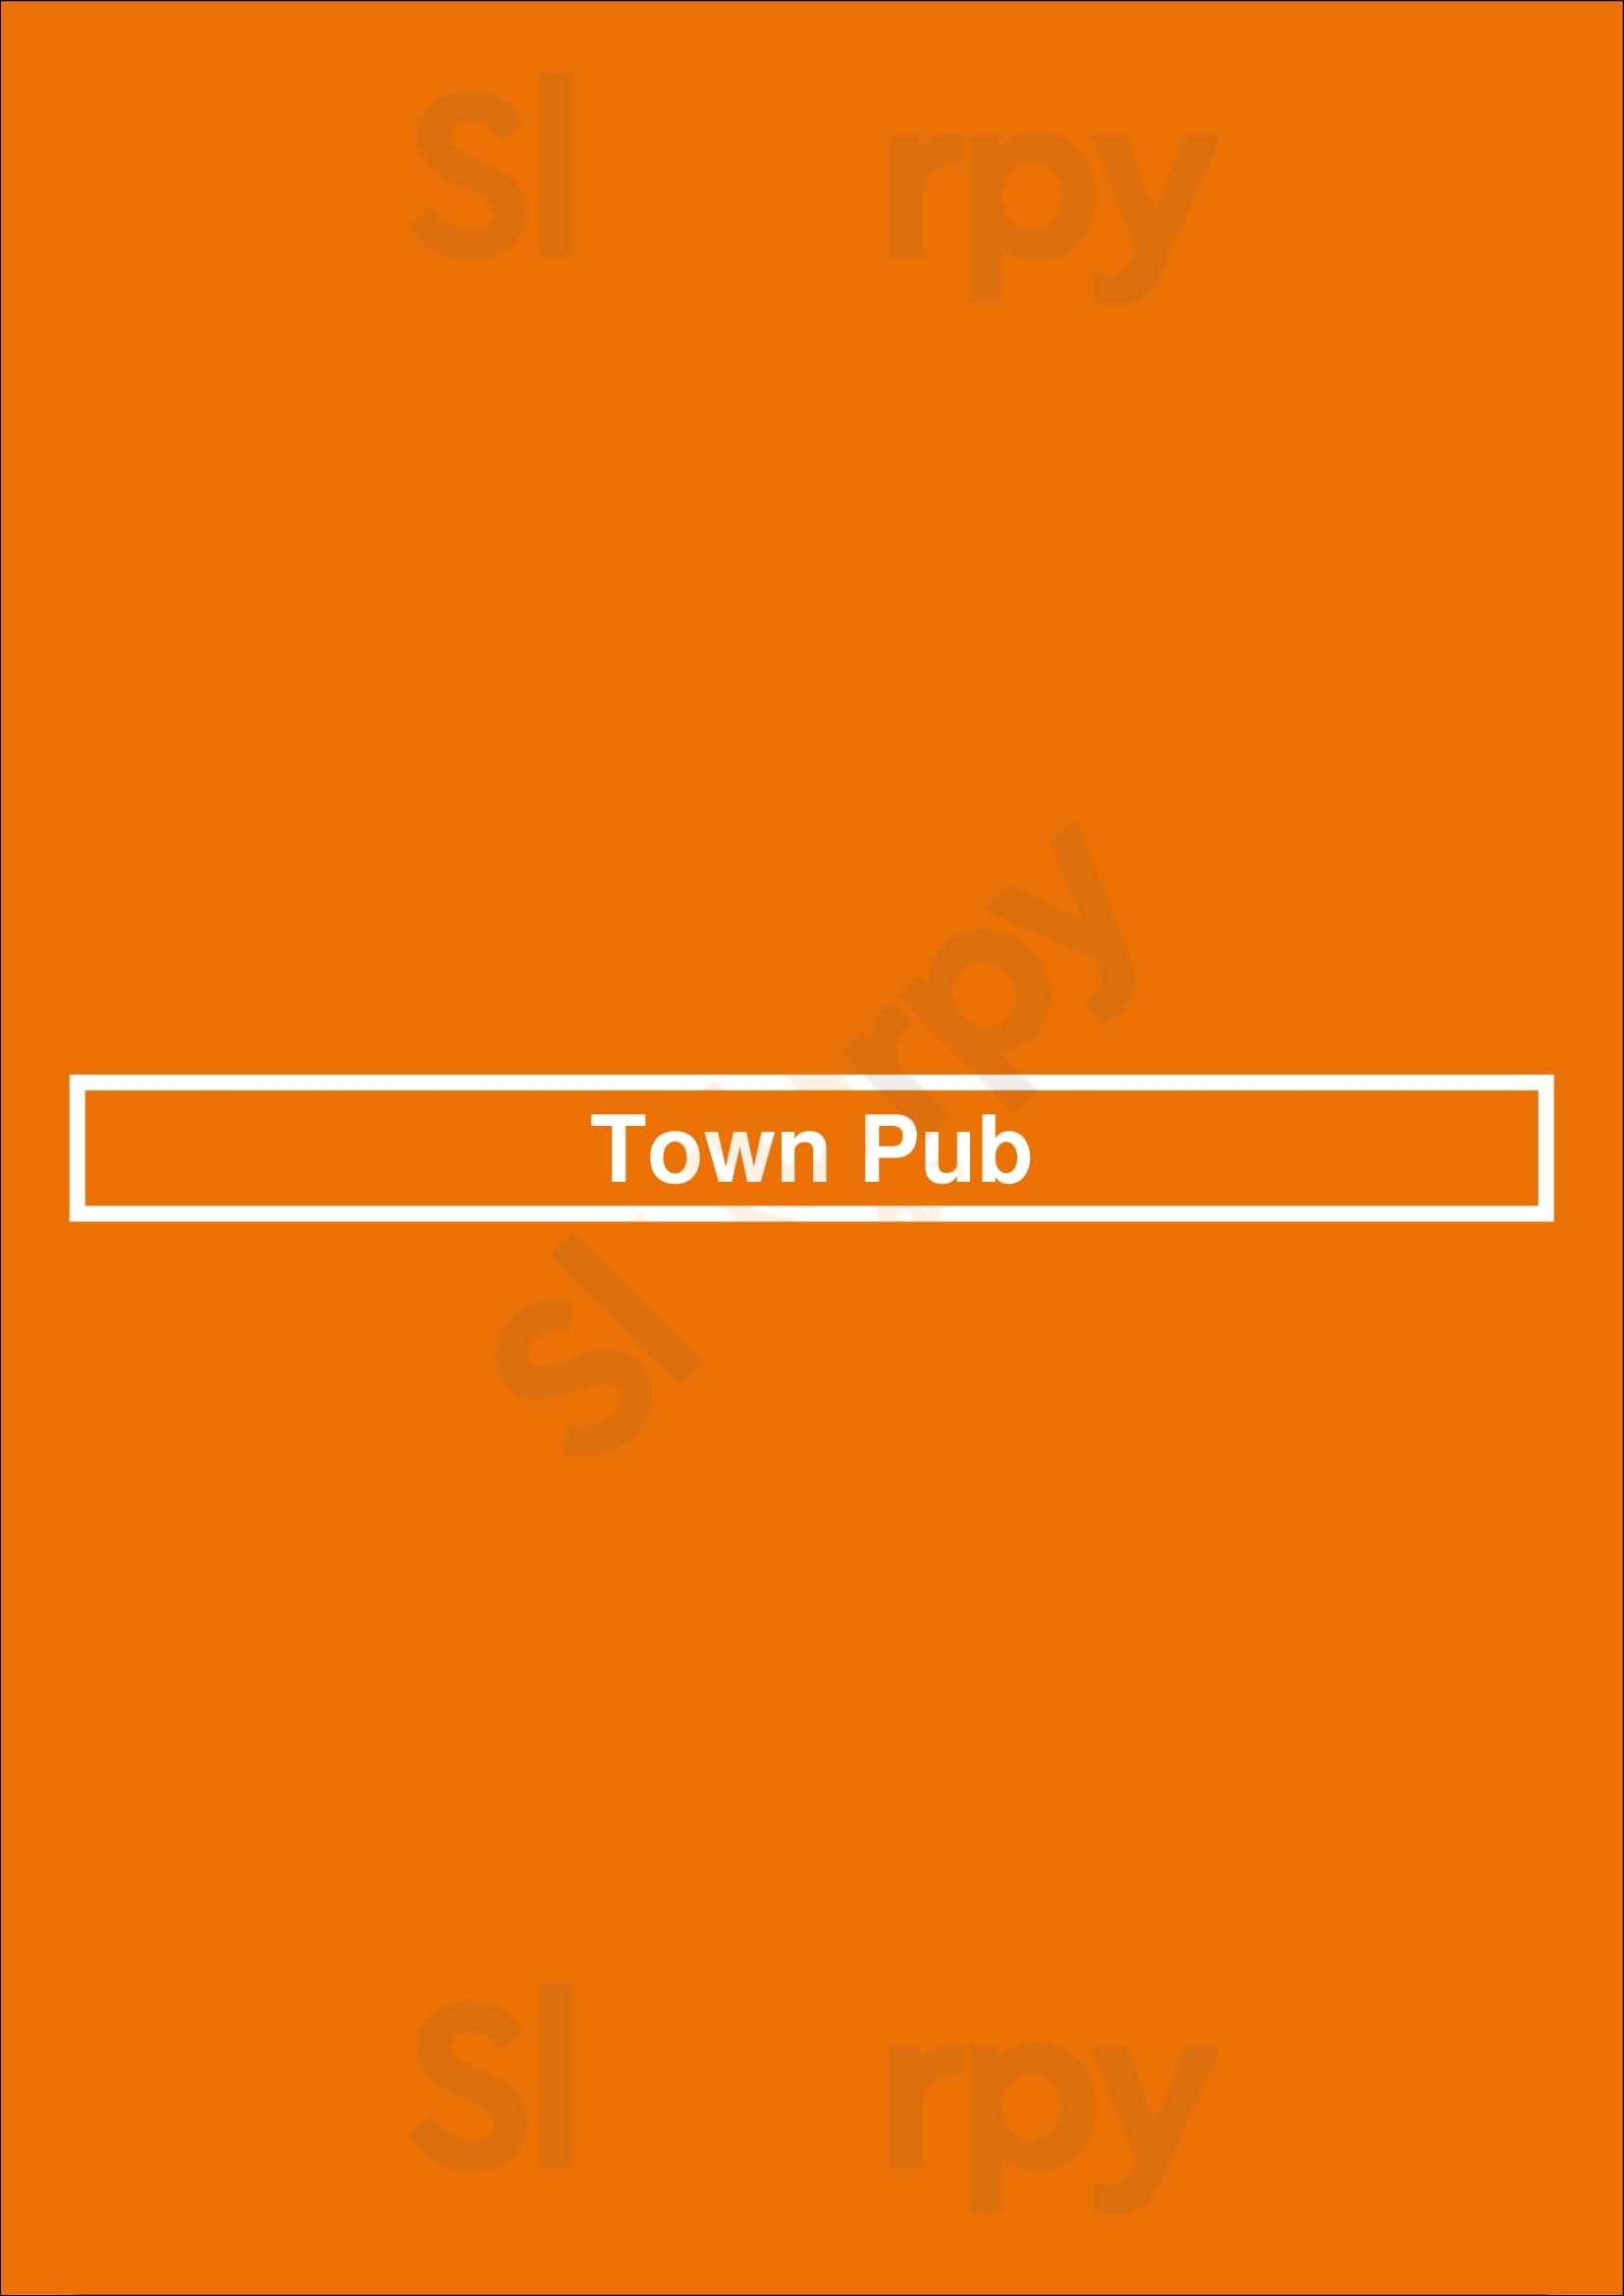 Town Pub Bloomfield Menu - 1